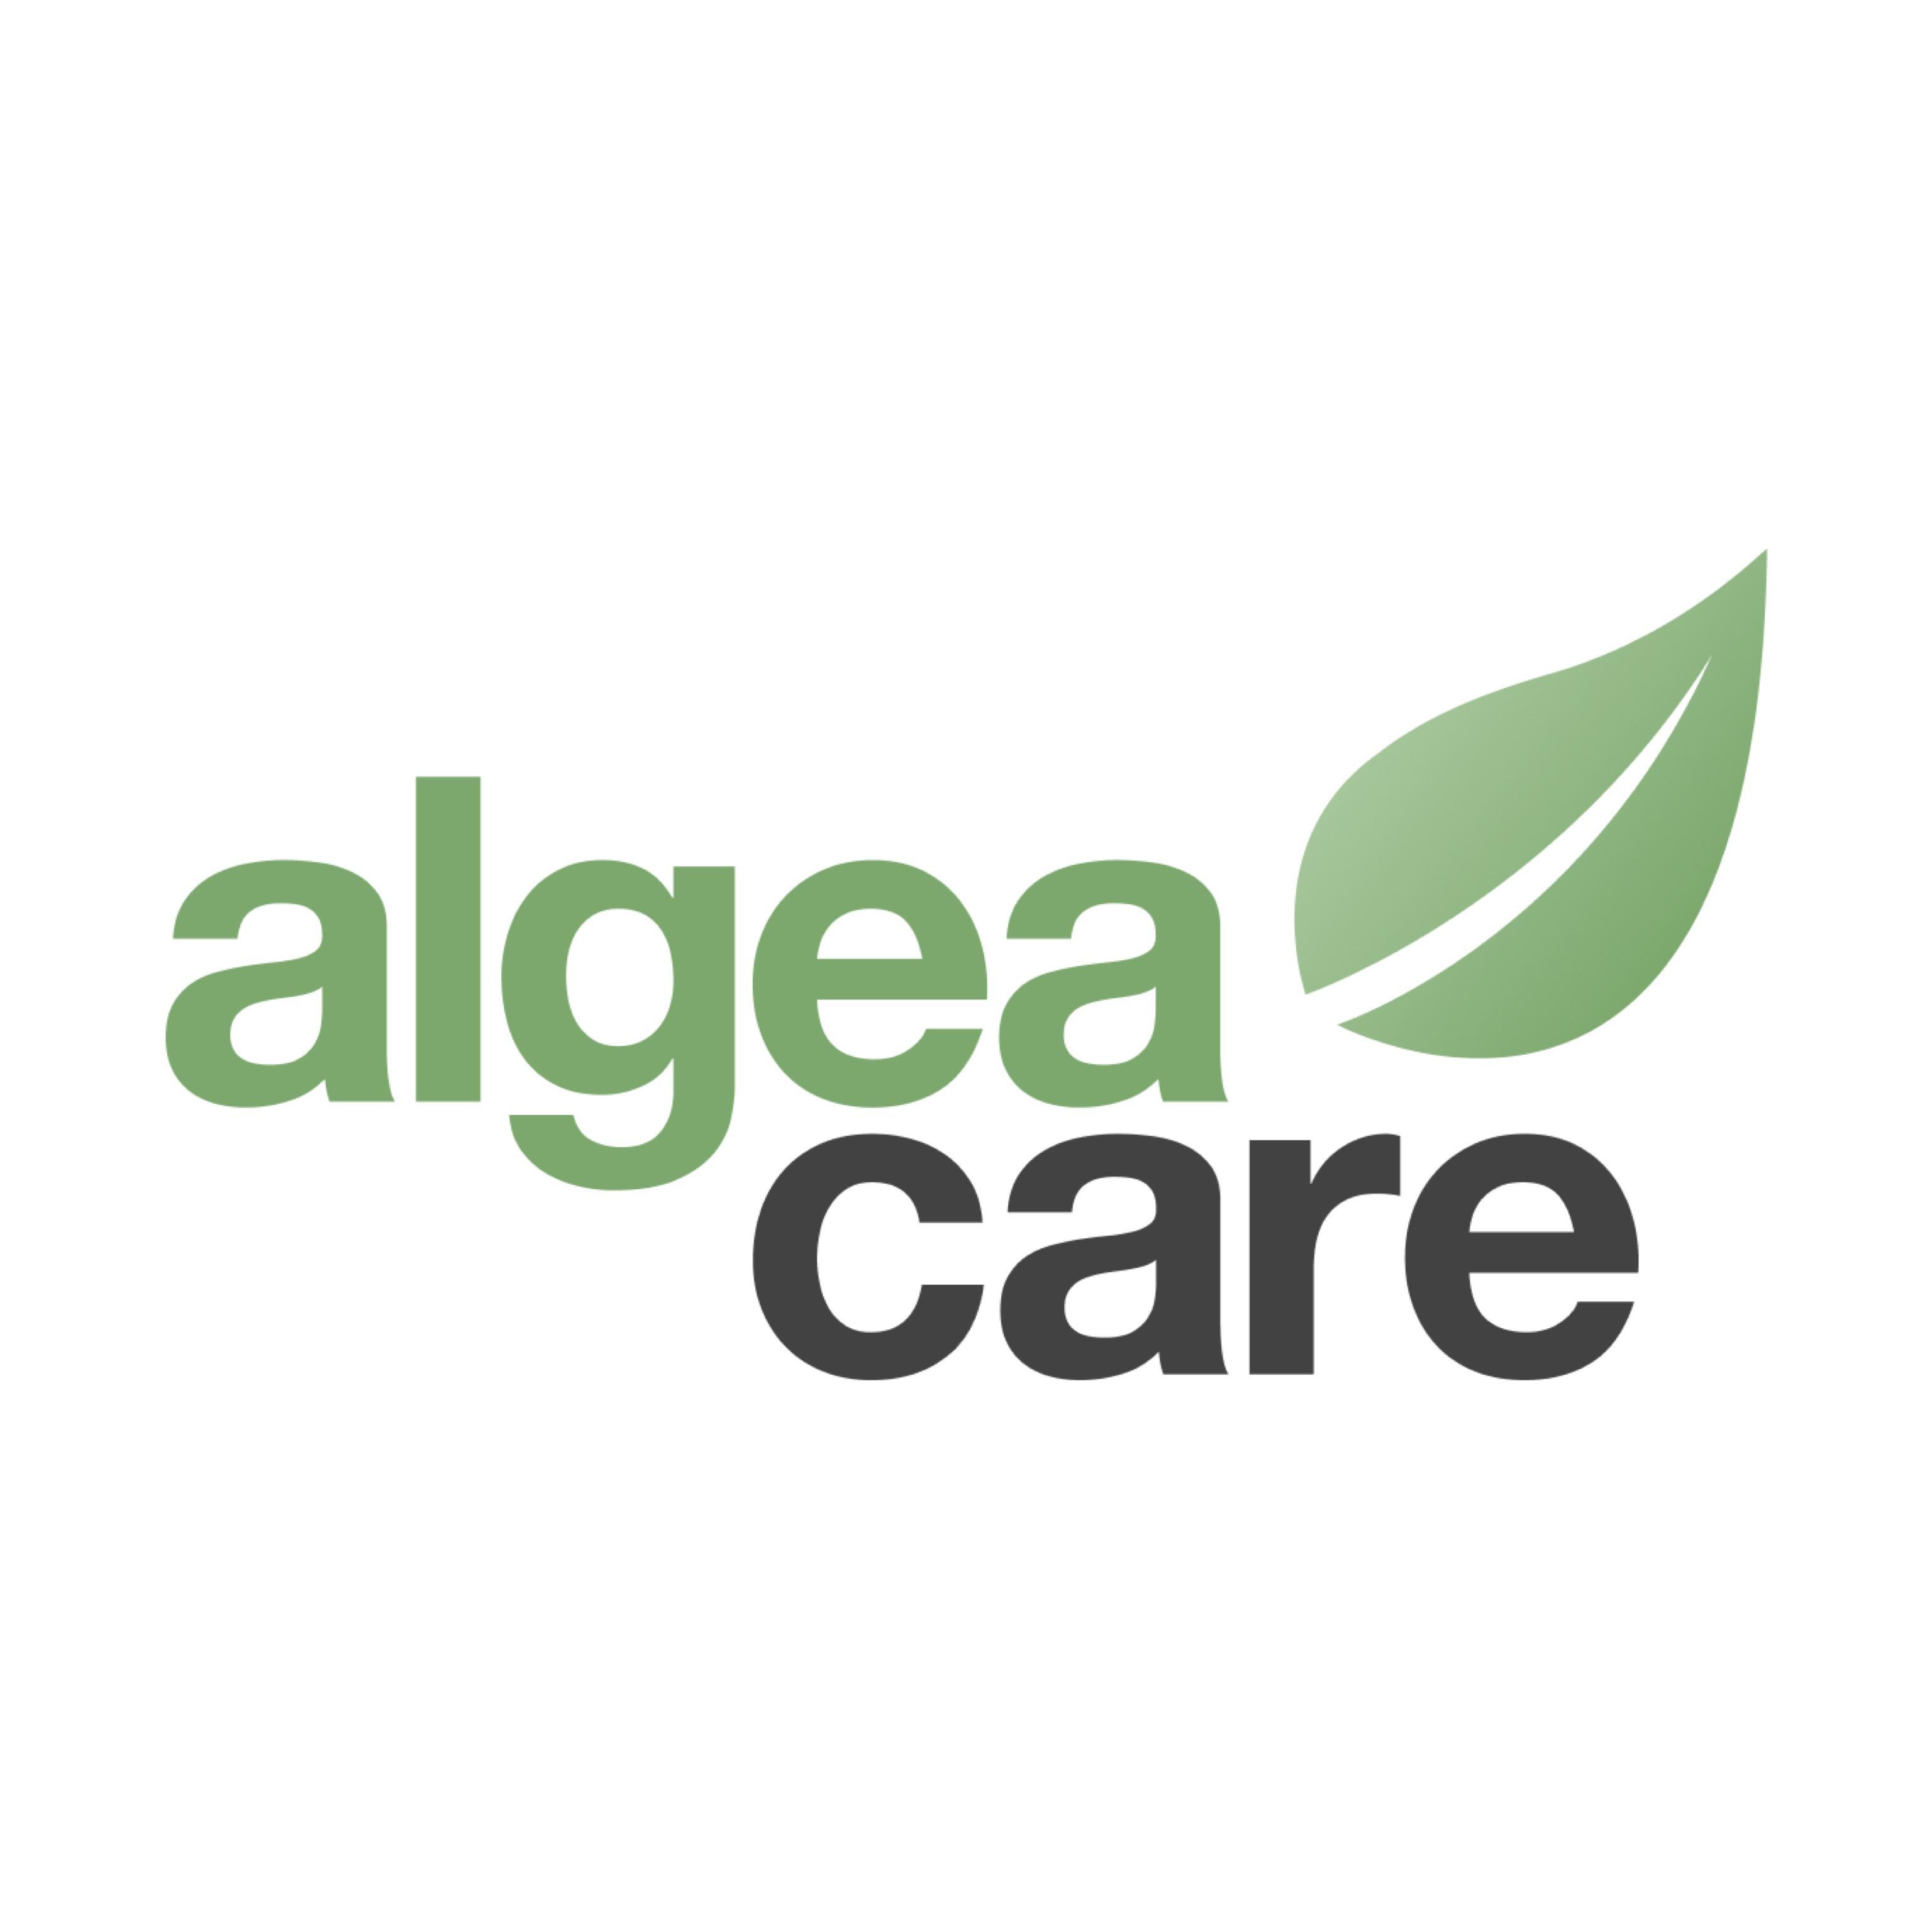 Algea Care Therapiezentrum Köln in Köln - Logo